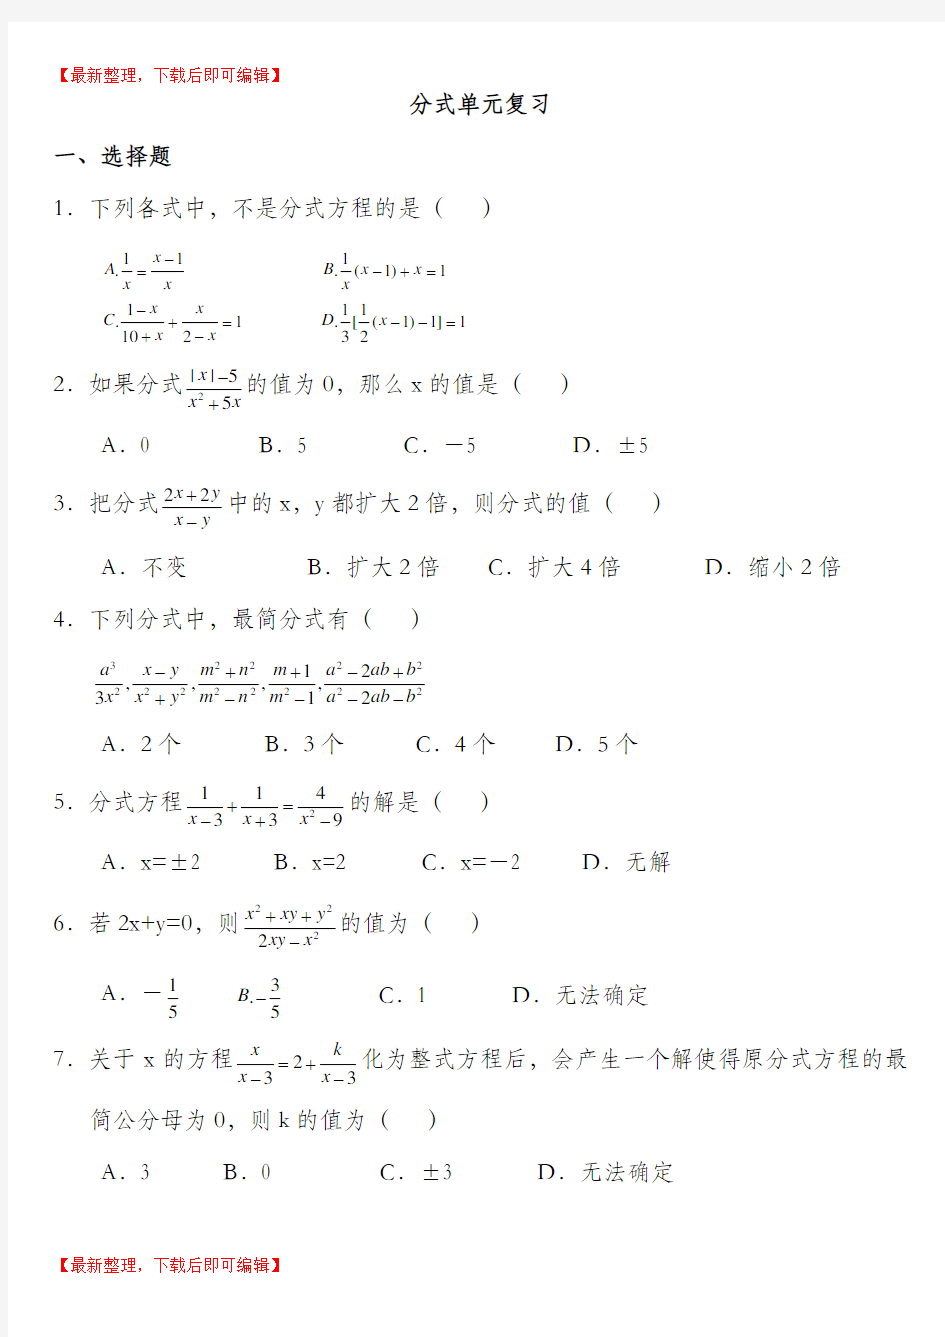 上海分式测试卷(附答案)(完整资料)